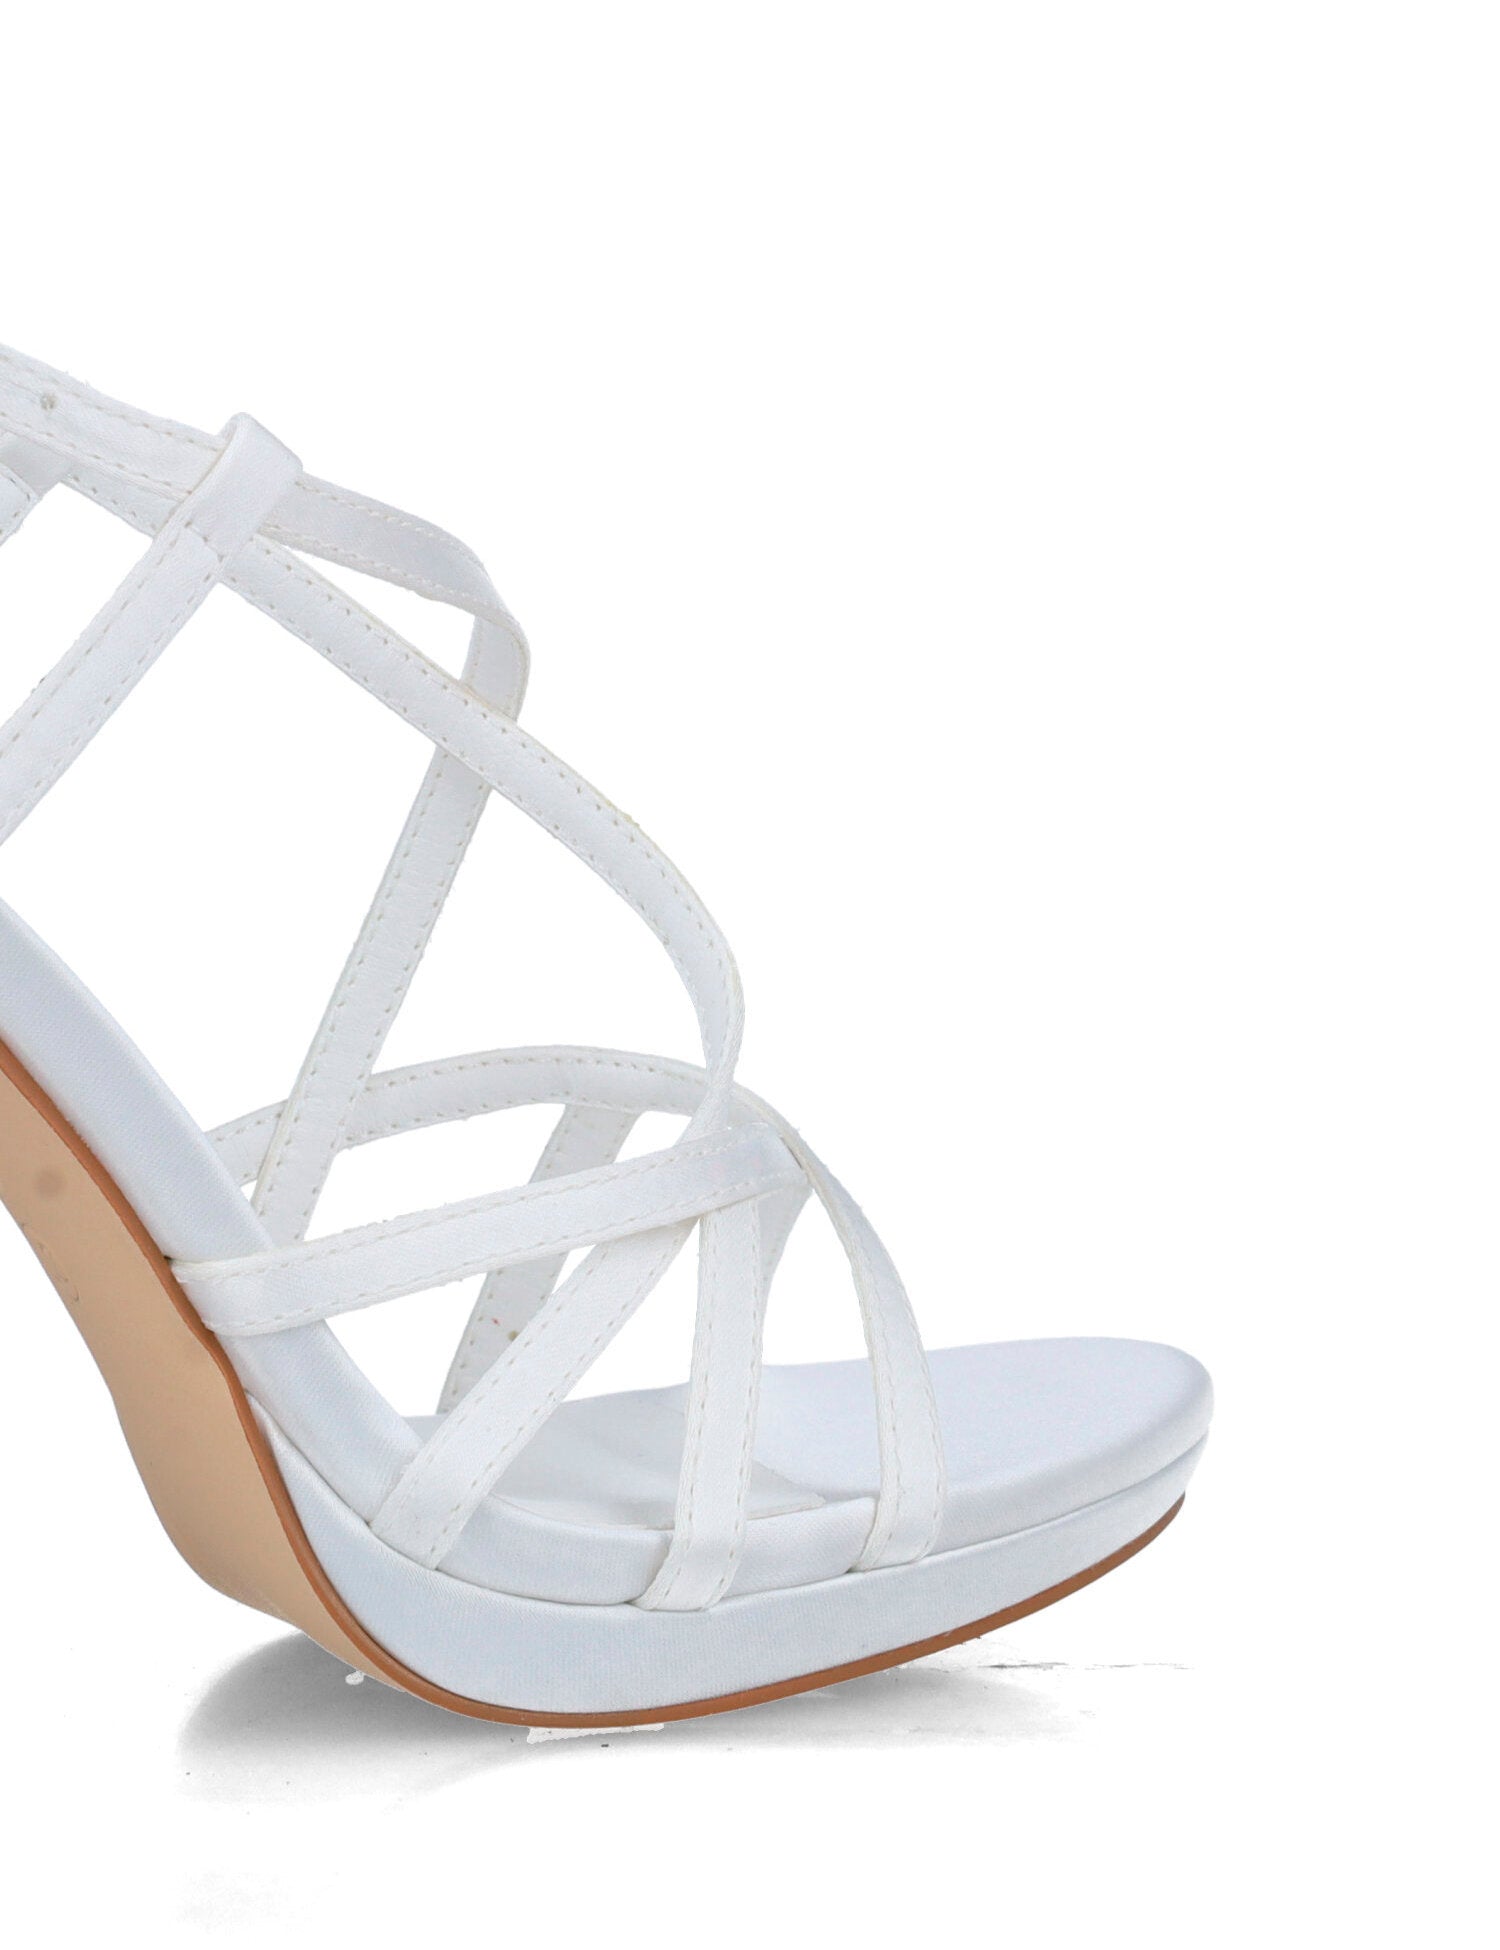 White High-Heel Sandals_25642_04_03